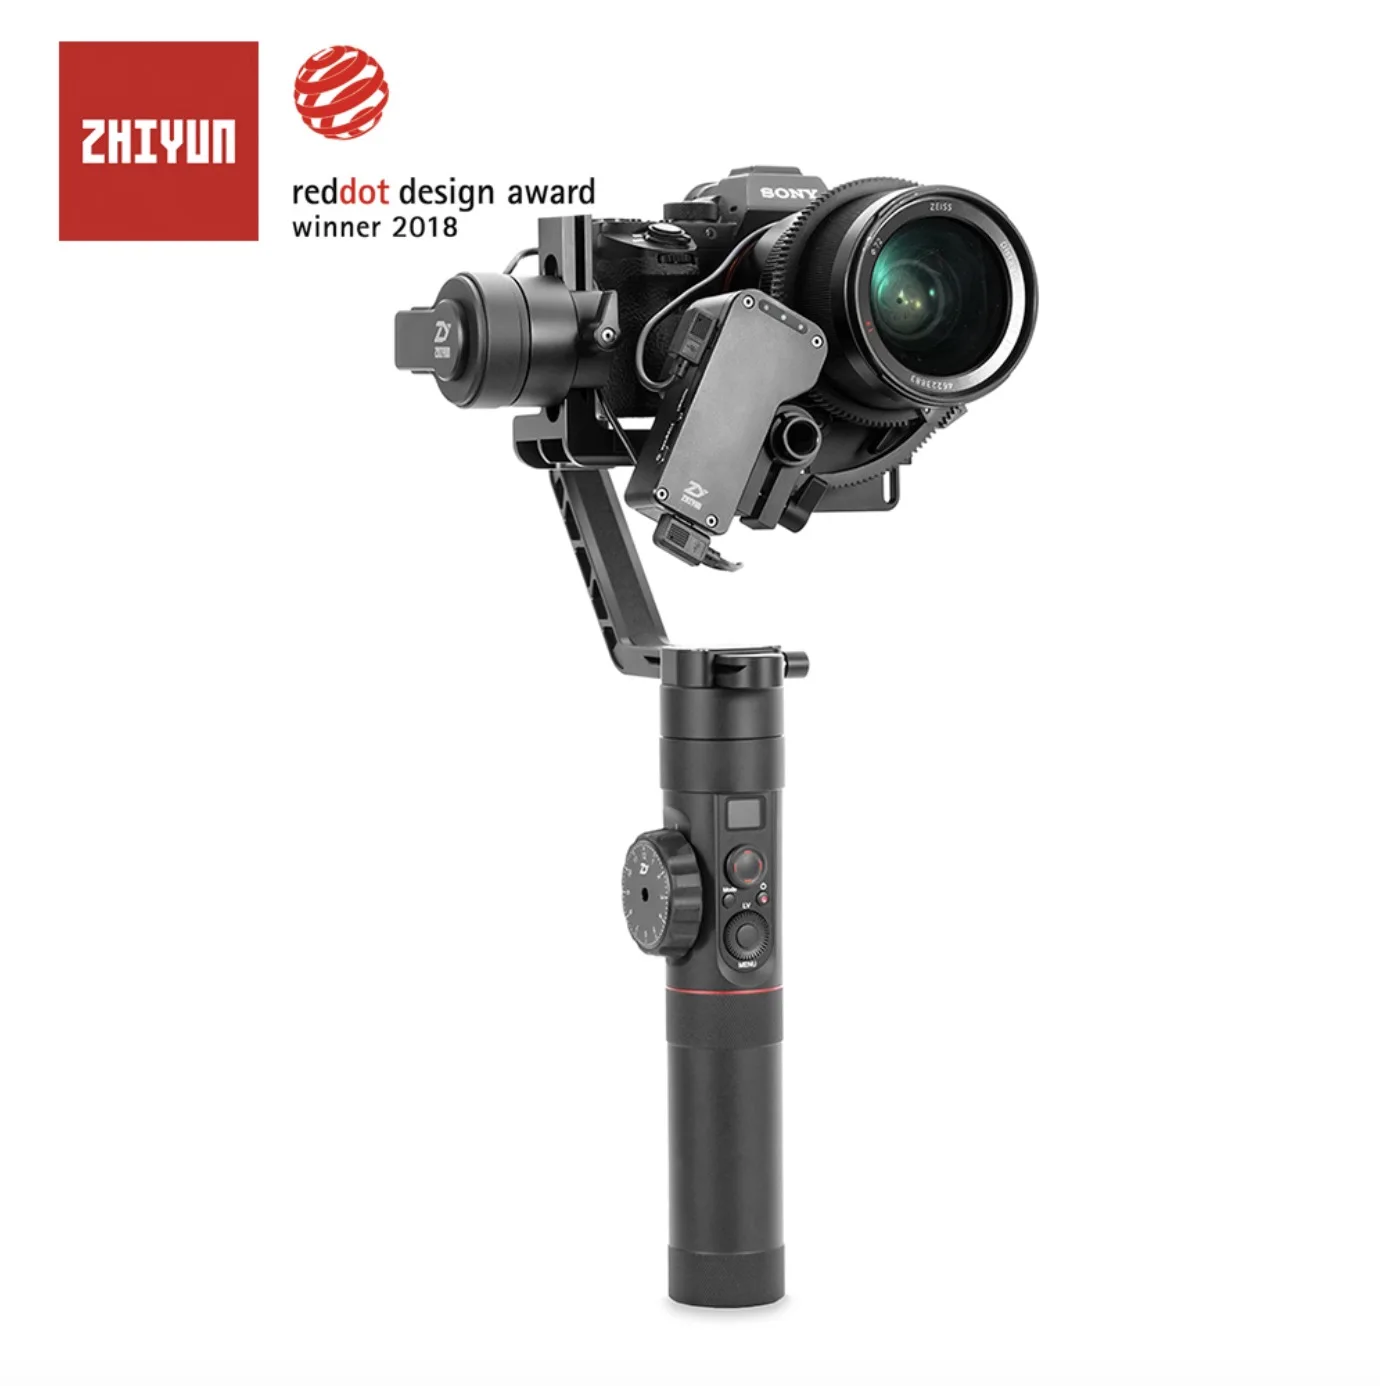 Zhiyun официальный кран 2 3-Axis Камера стабилизатор для всех моделей беззеркальная камера DSLR Canon 5D2/3/4 с сервоприводом для непрерывного изменения фокусировки камеры